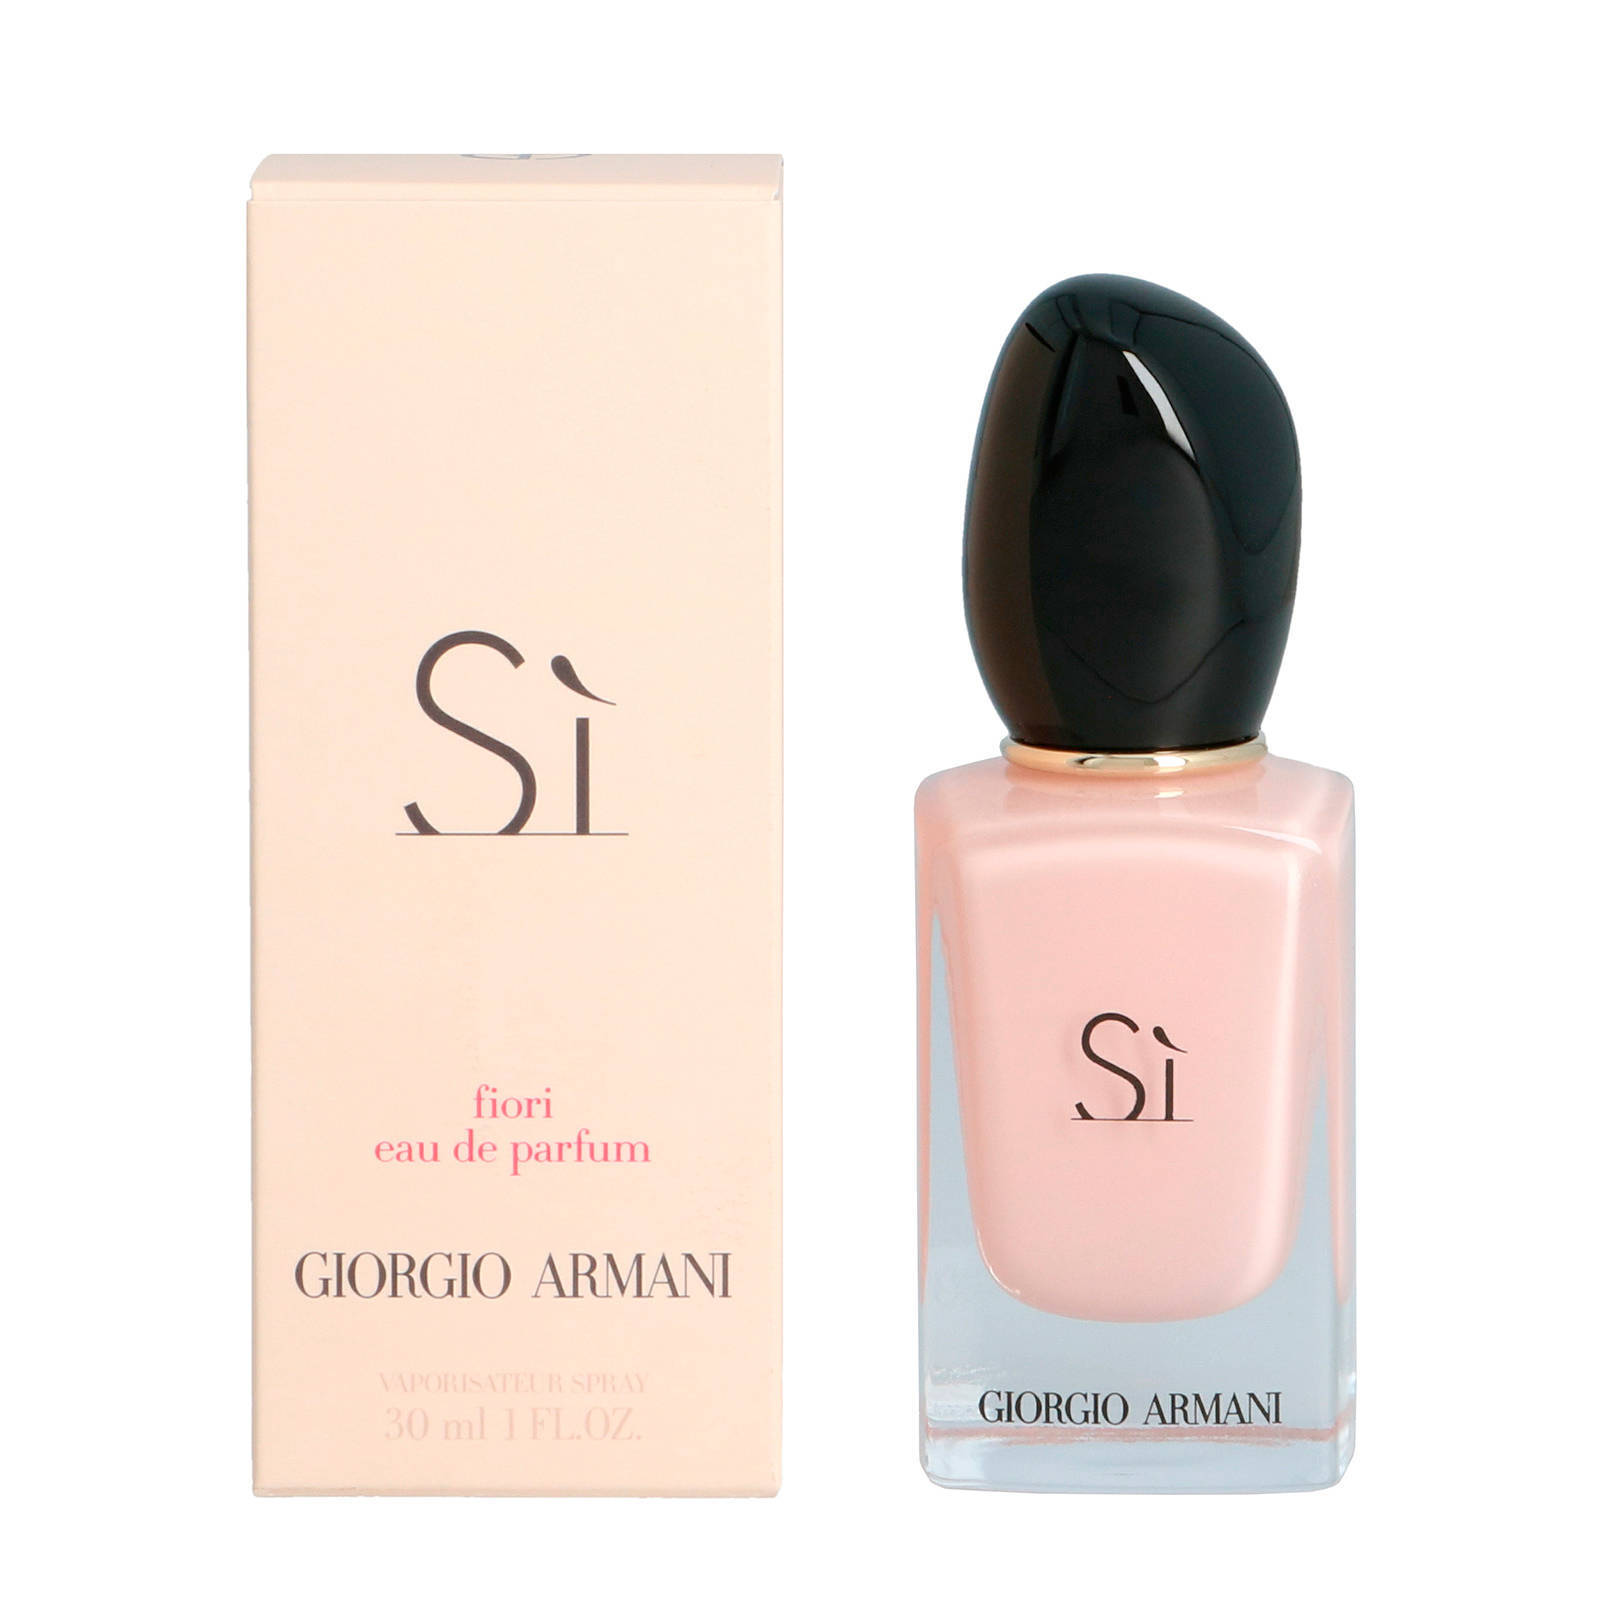 Armani Si Fiori eau de parfum - 30 ml 